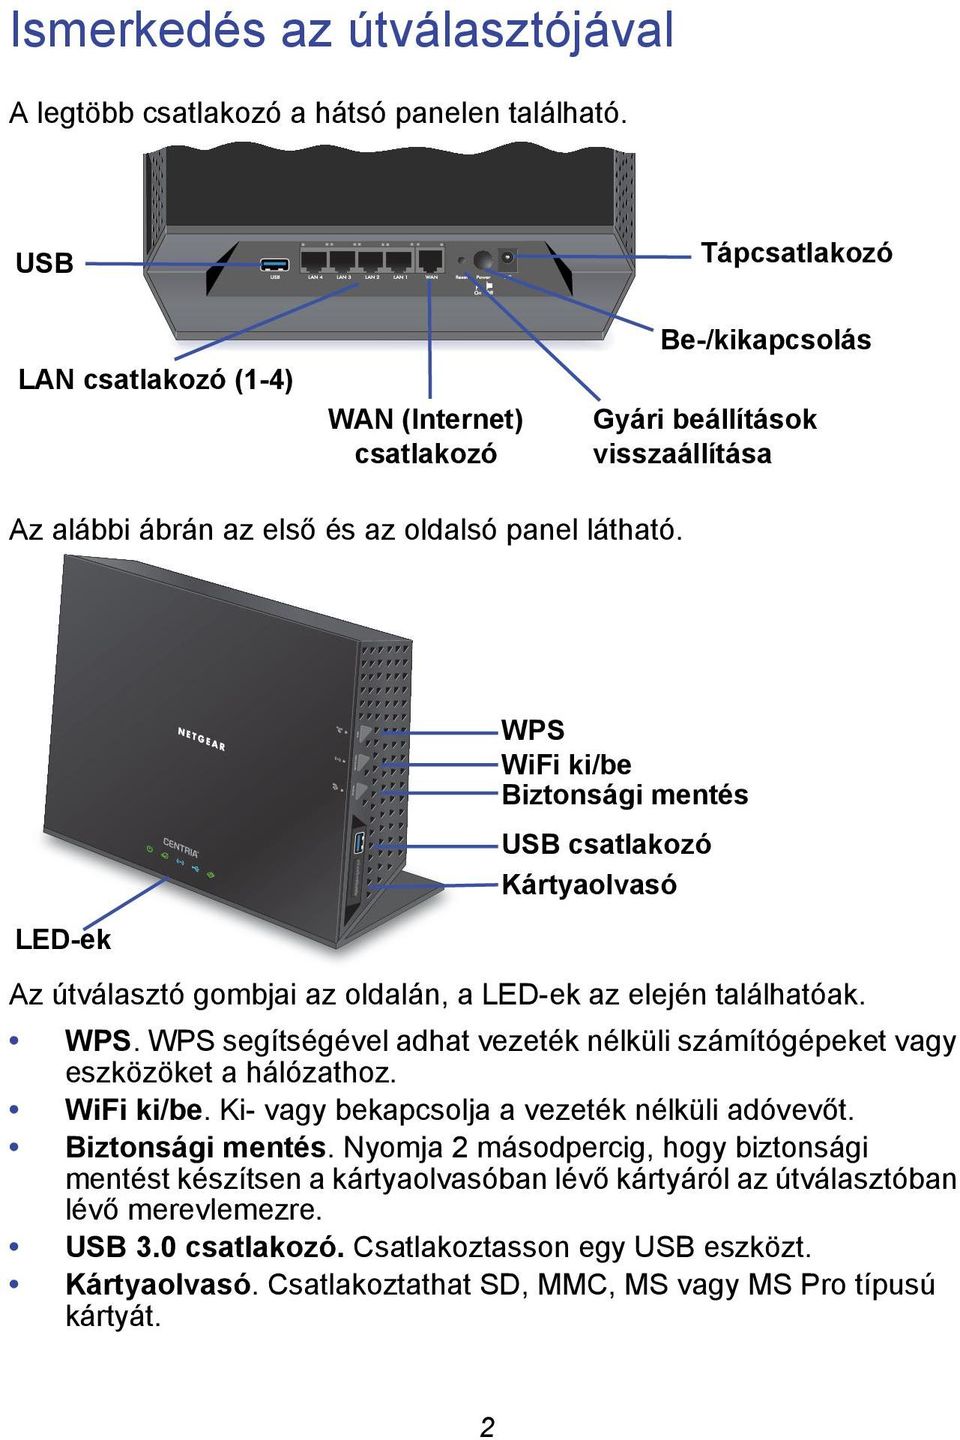 LED-ek WPS WiFi ki/be Biztonsági mentés USB csatlakozó Kártyaolvasó Az útválasztó gombjai az oldalán, a LED-ek az elején találhatóak. WPS. WPS segítségével adhat vezeték nélküli számítógépeket vagy eszközöket a hálózathoz.